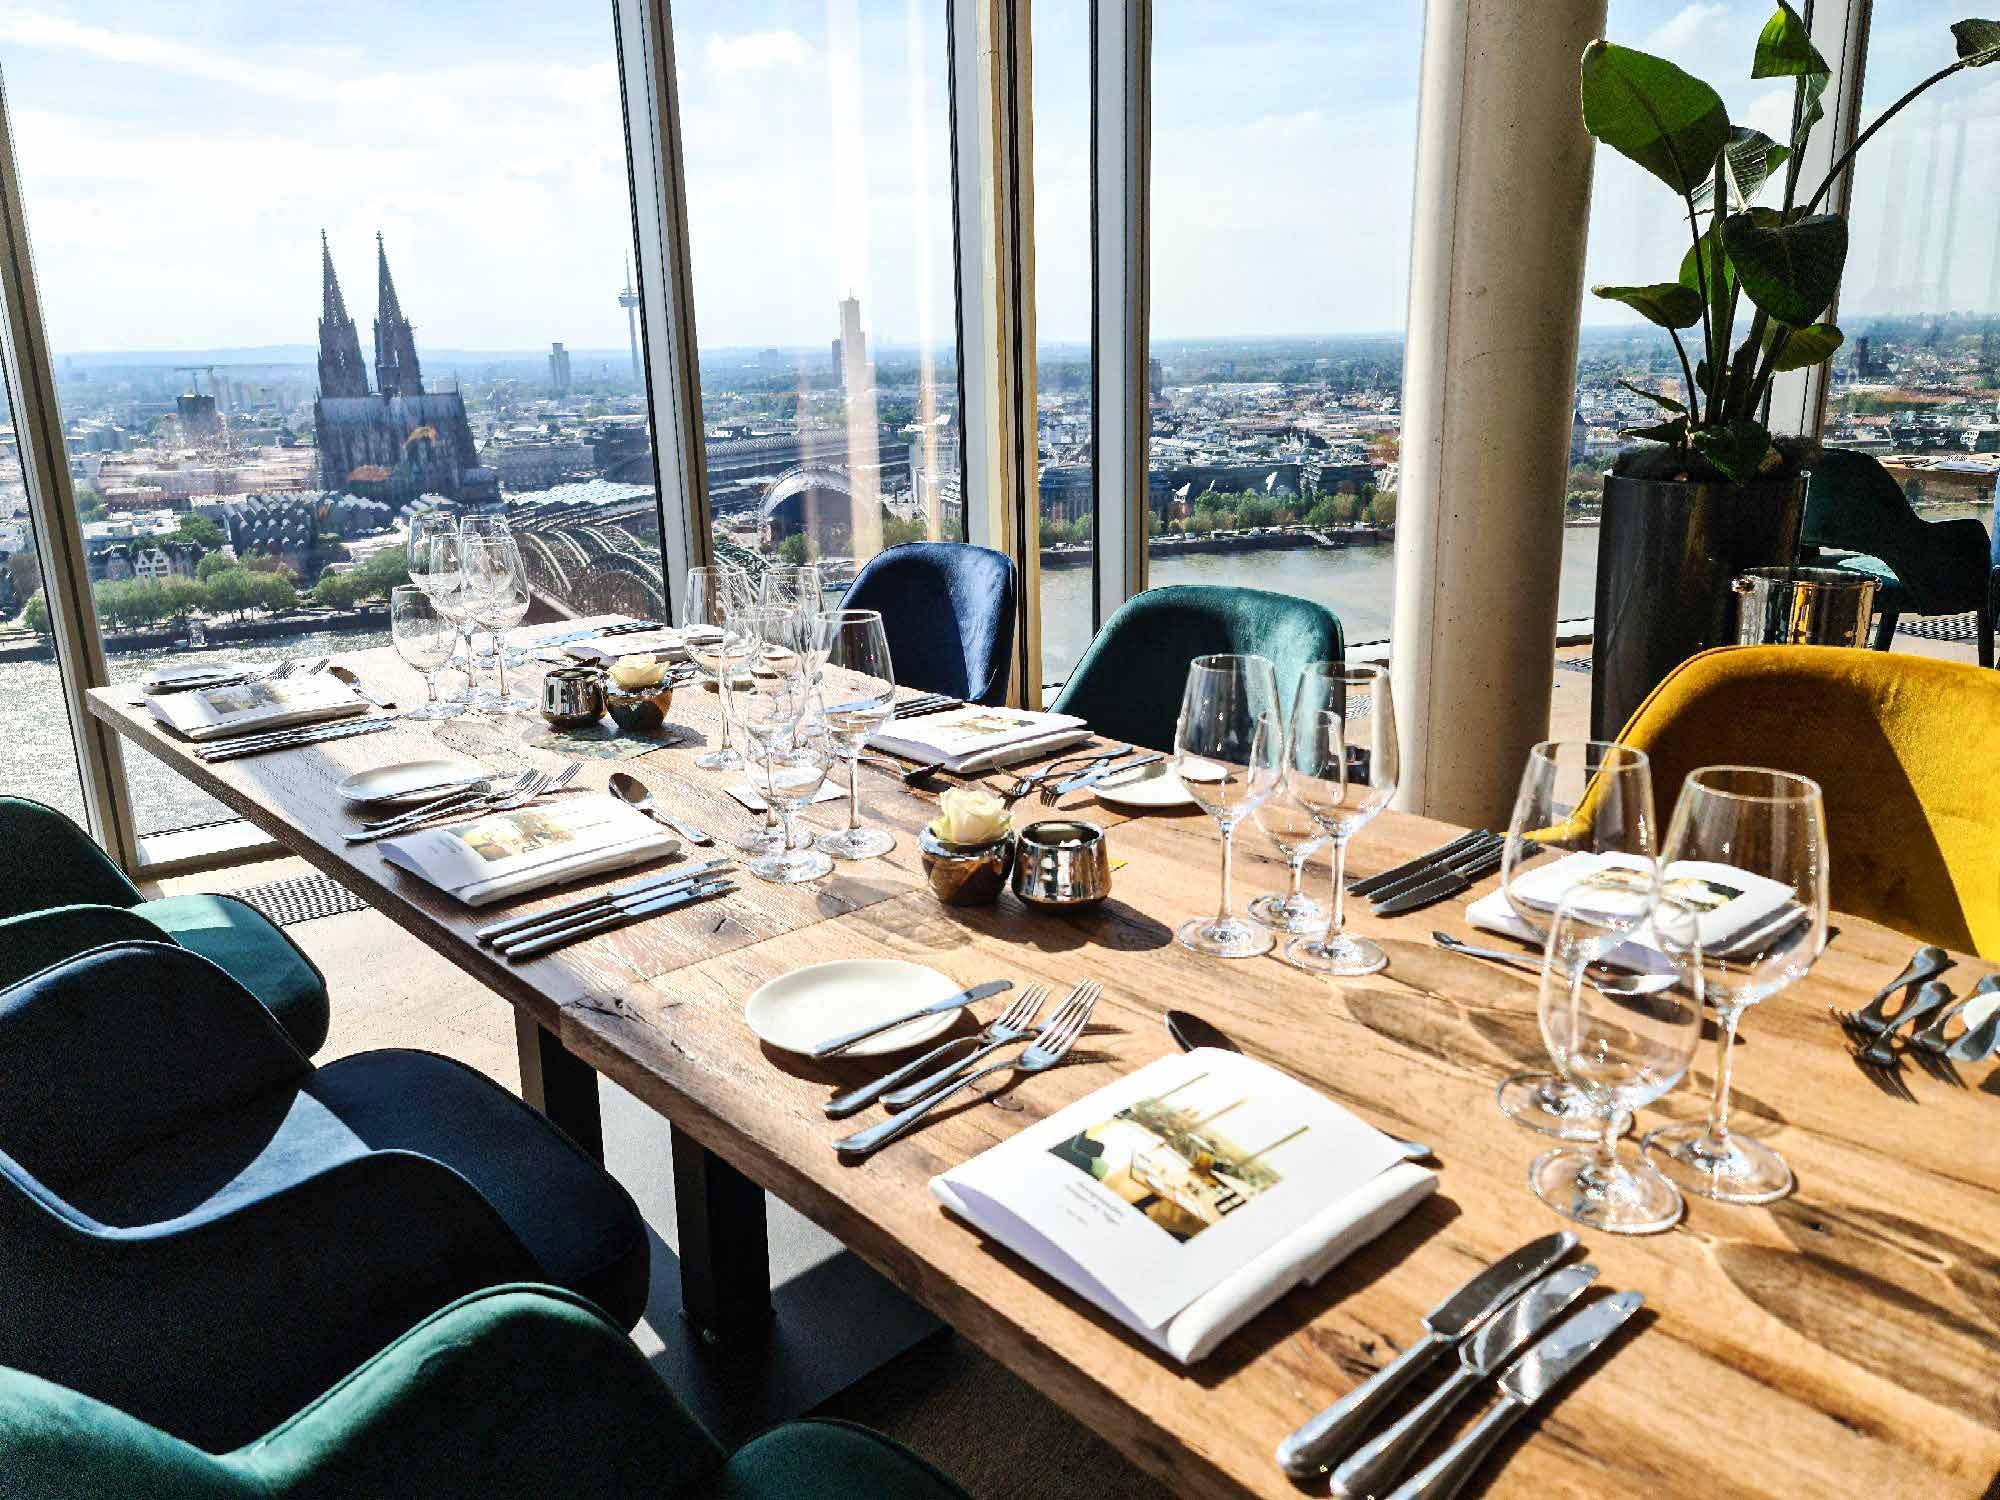 Restaurant Klnsky, Riverside dining, Stunning views, Event location, 2000x1500 HD Desktop